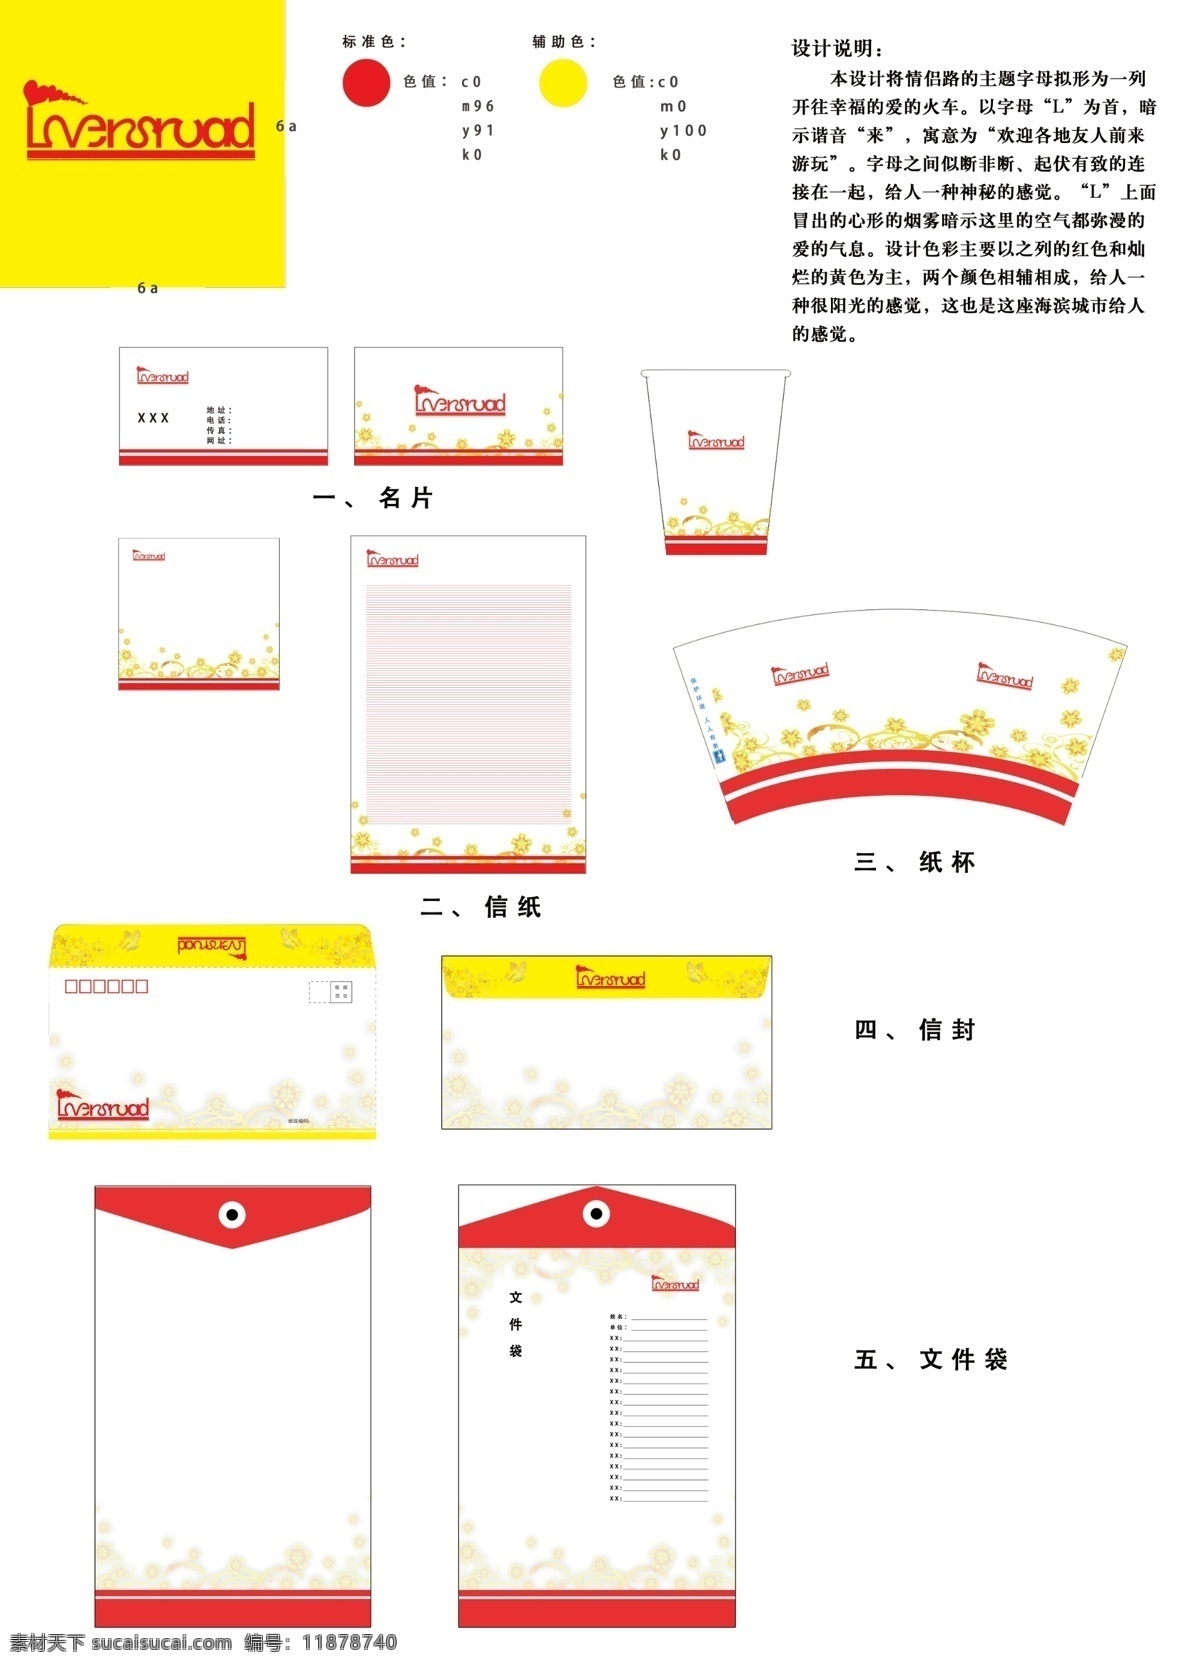 珠海旅游 logo vi设计 广告设计模板 信封 源文件 纸杯 大档案袋 明片 psd源文件 logo设计